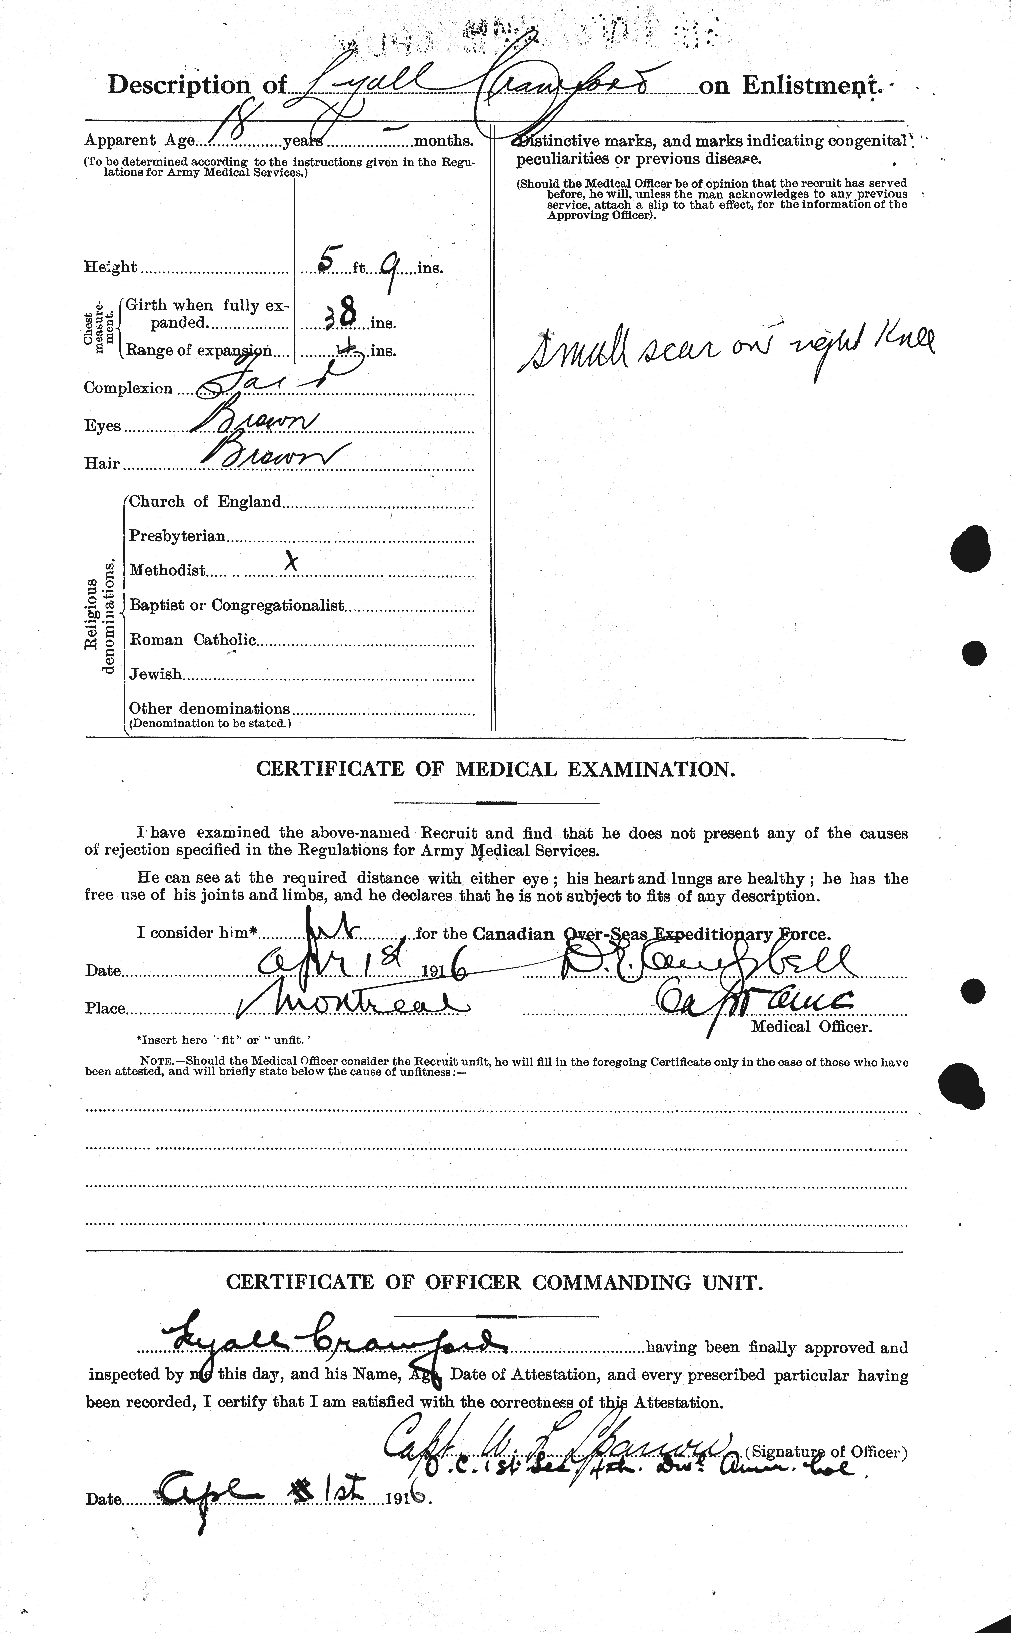 Dossiers du Personnel de la Première Guerre mondiale - CEC 061787b